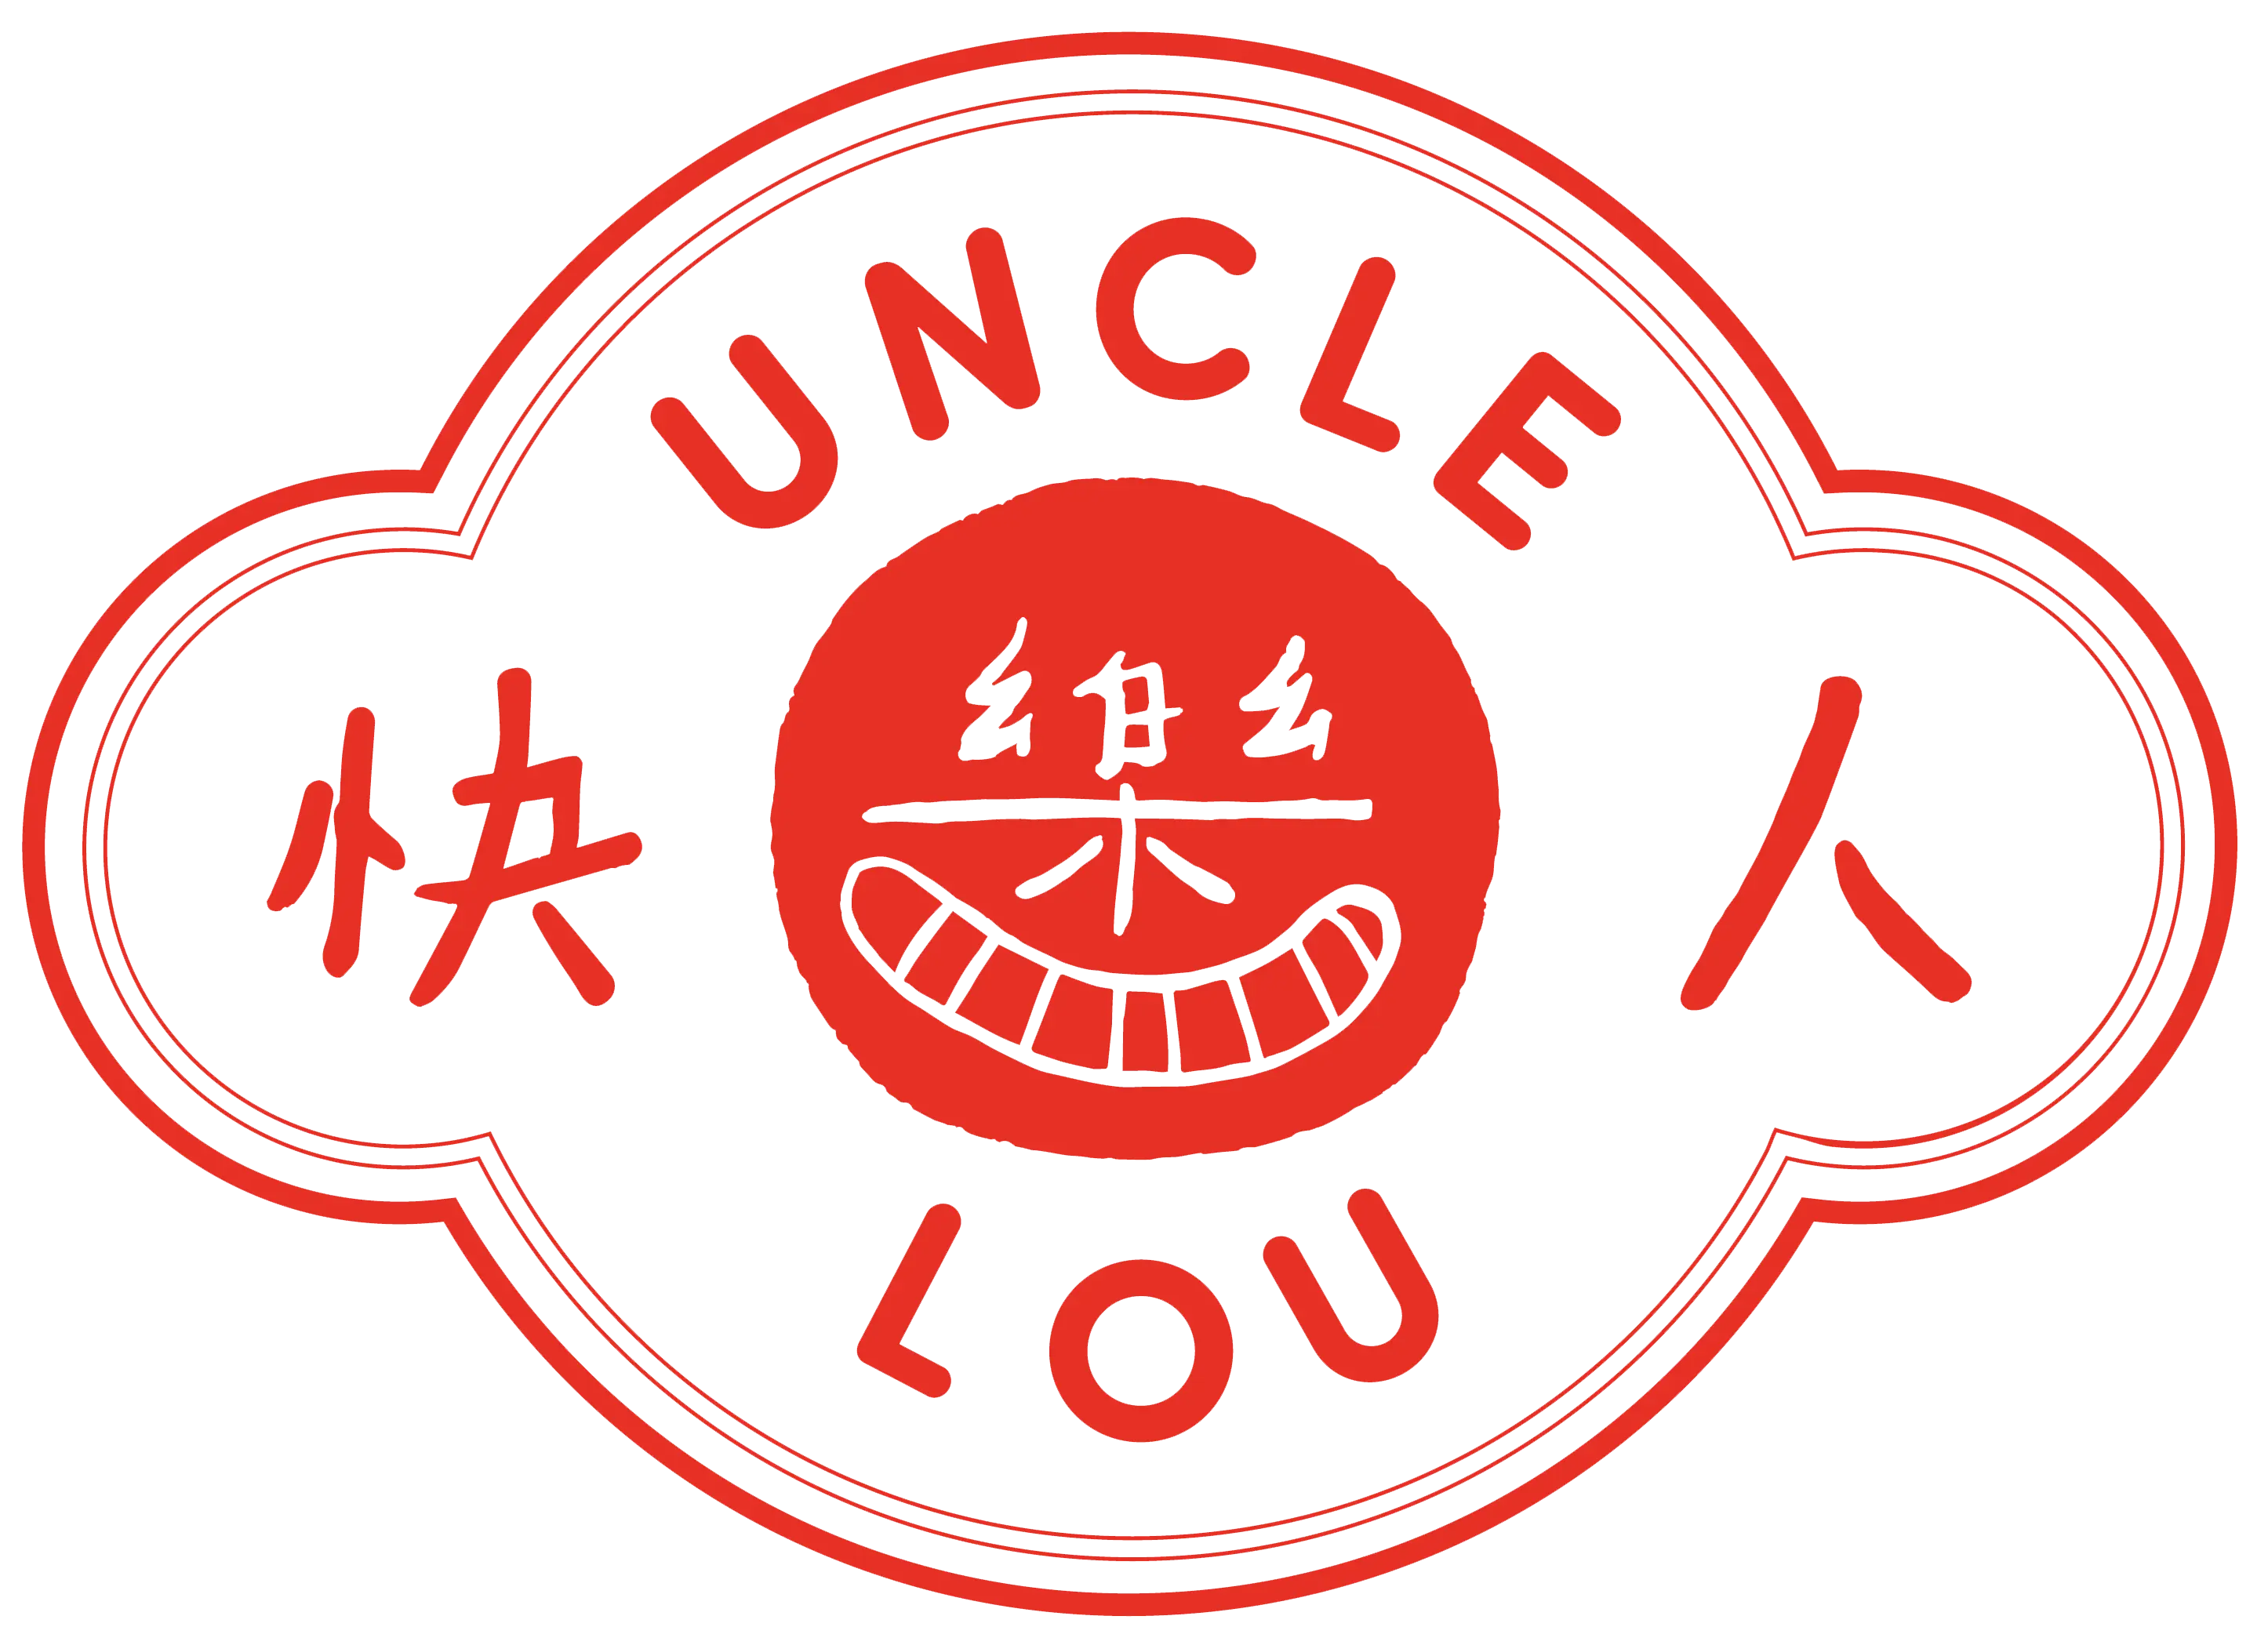 Uncle Lou